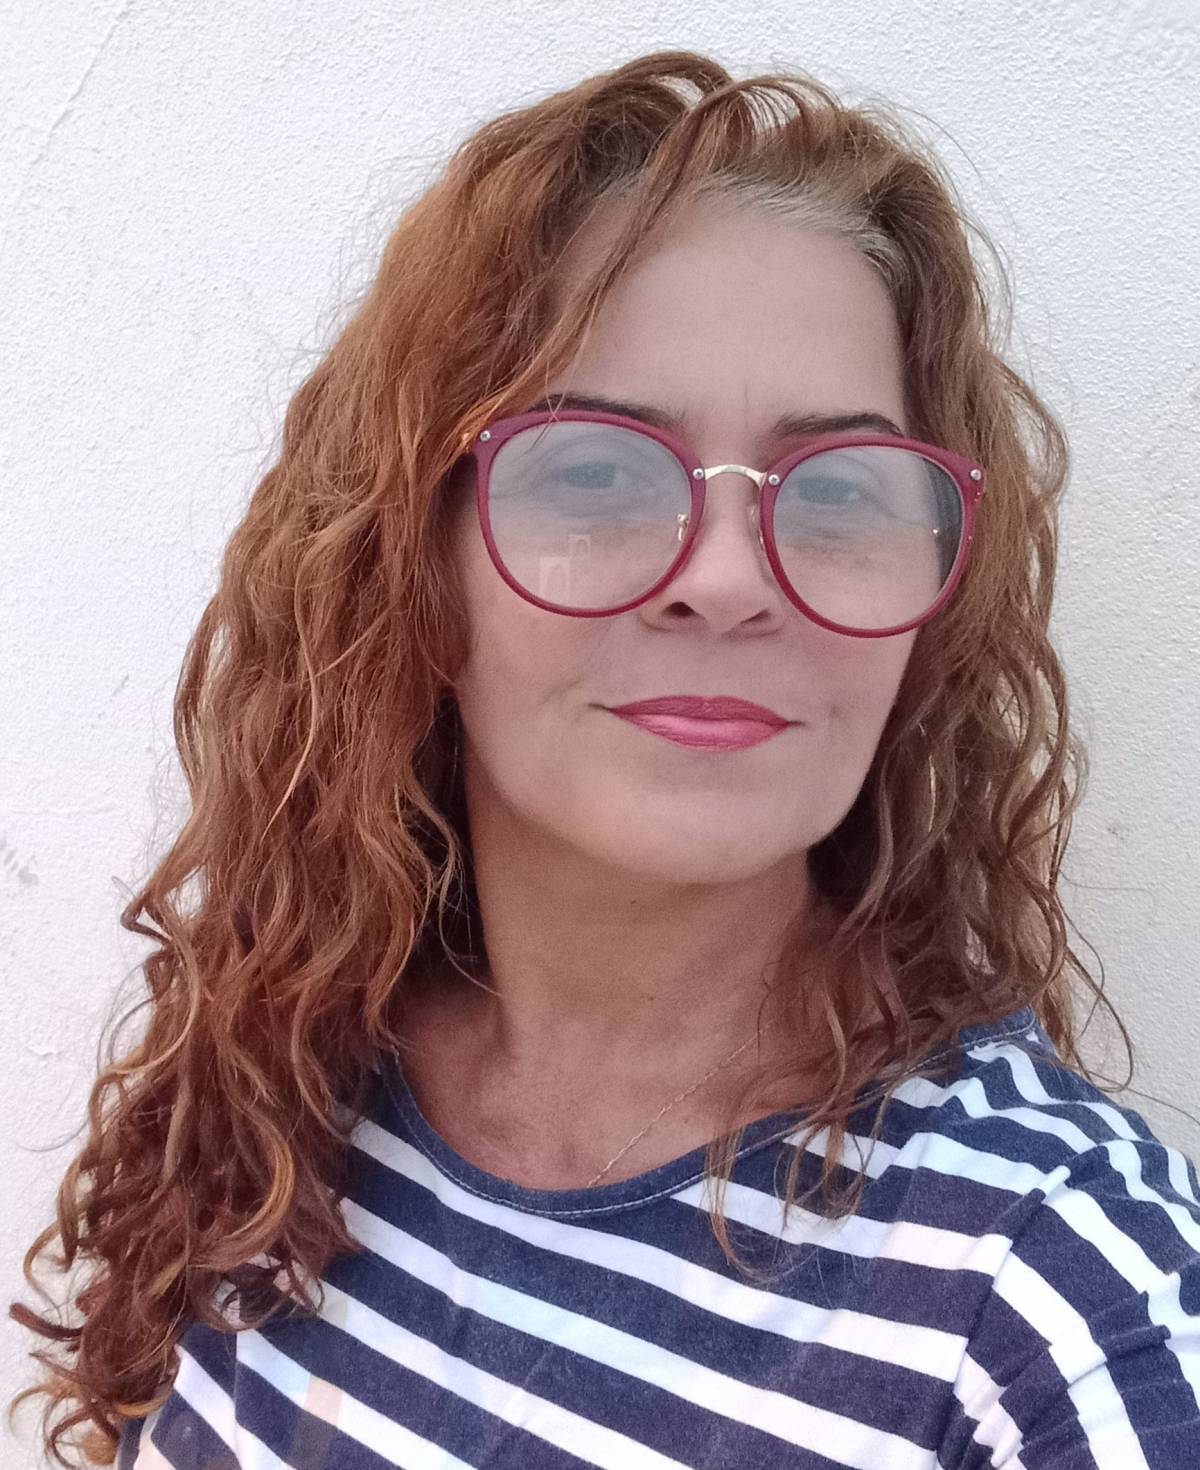 Joelma Barros - Cuidadora de idosos, serviços gerais, vendedora, cabeleireira - Silves - Limpeza a Fundo